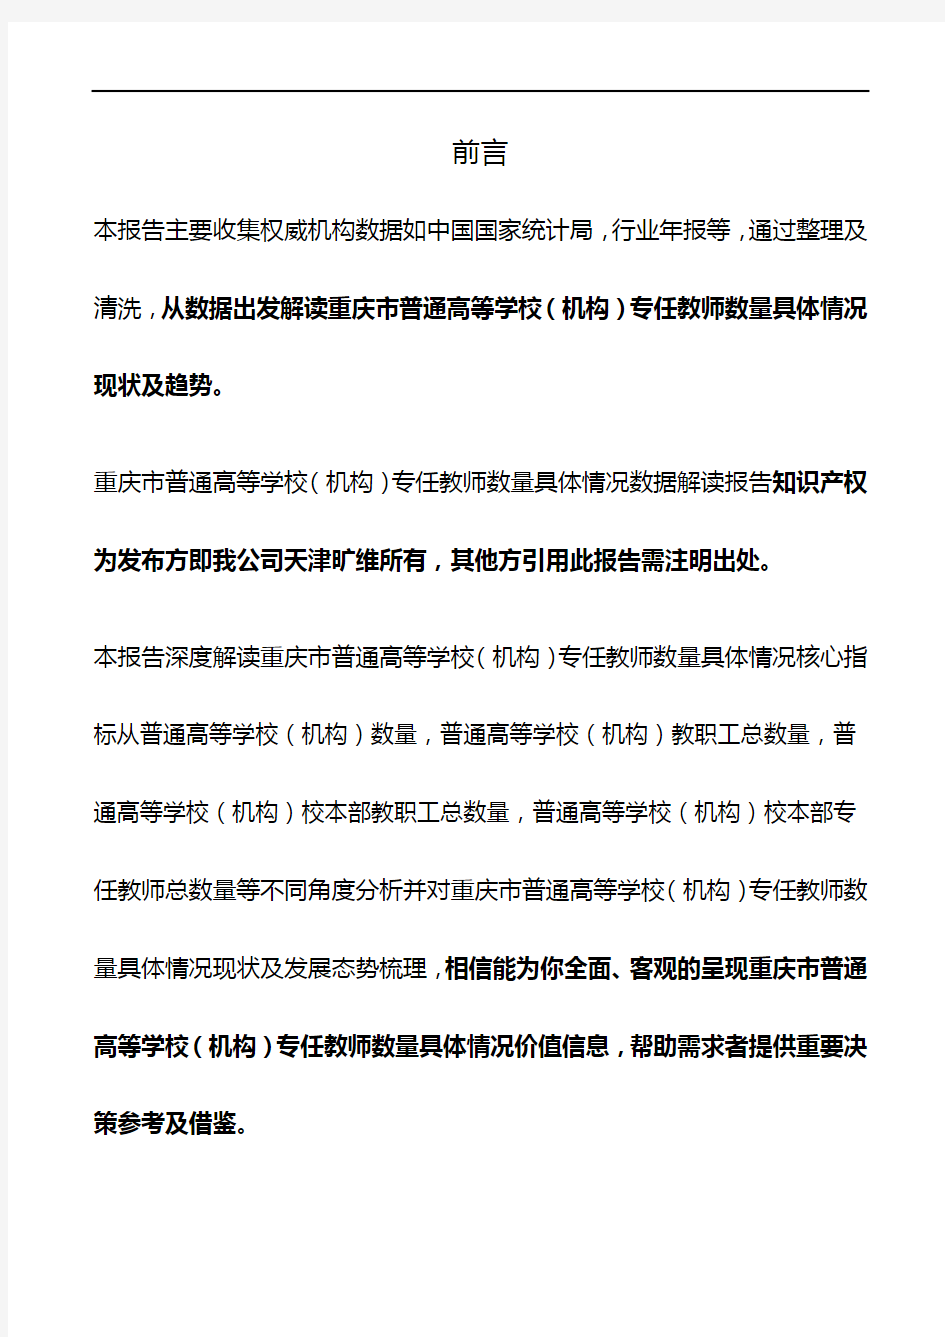 重庆市普通高等学校(机构)专任教师数量具体情况3年数据解读报告2020版